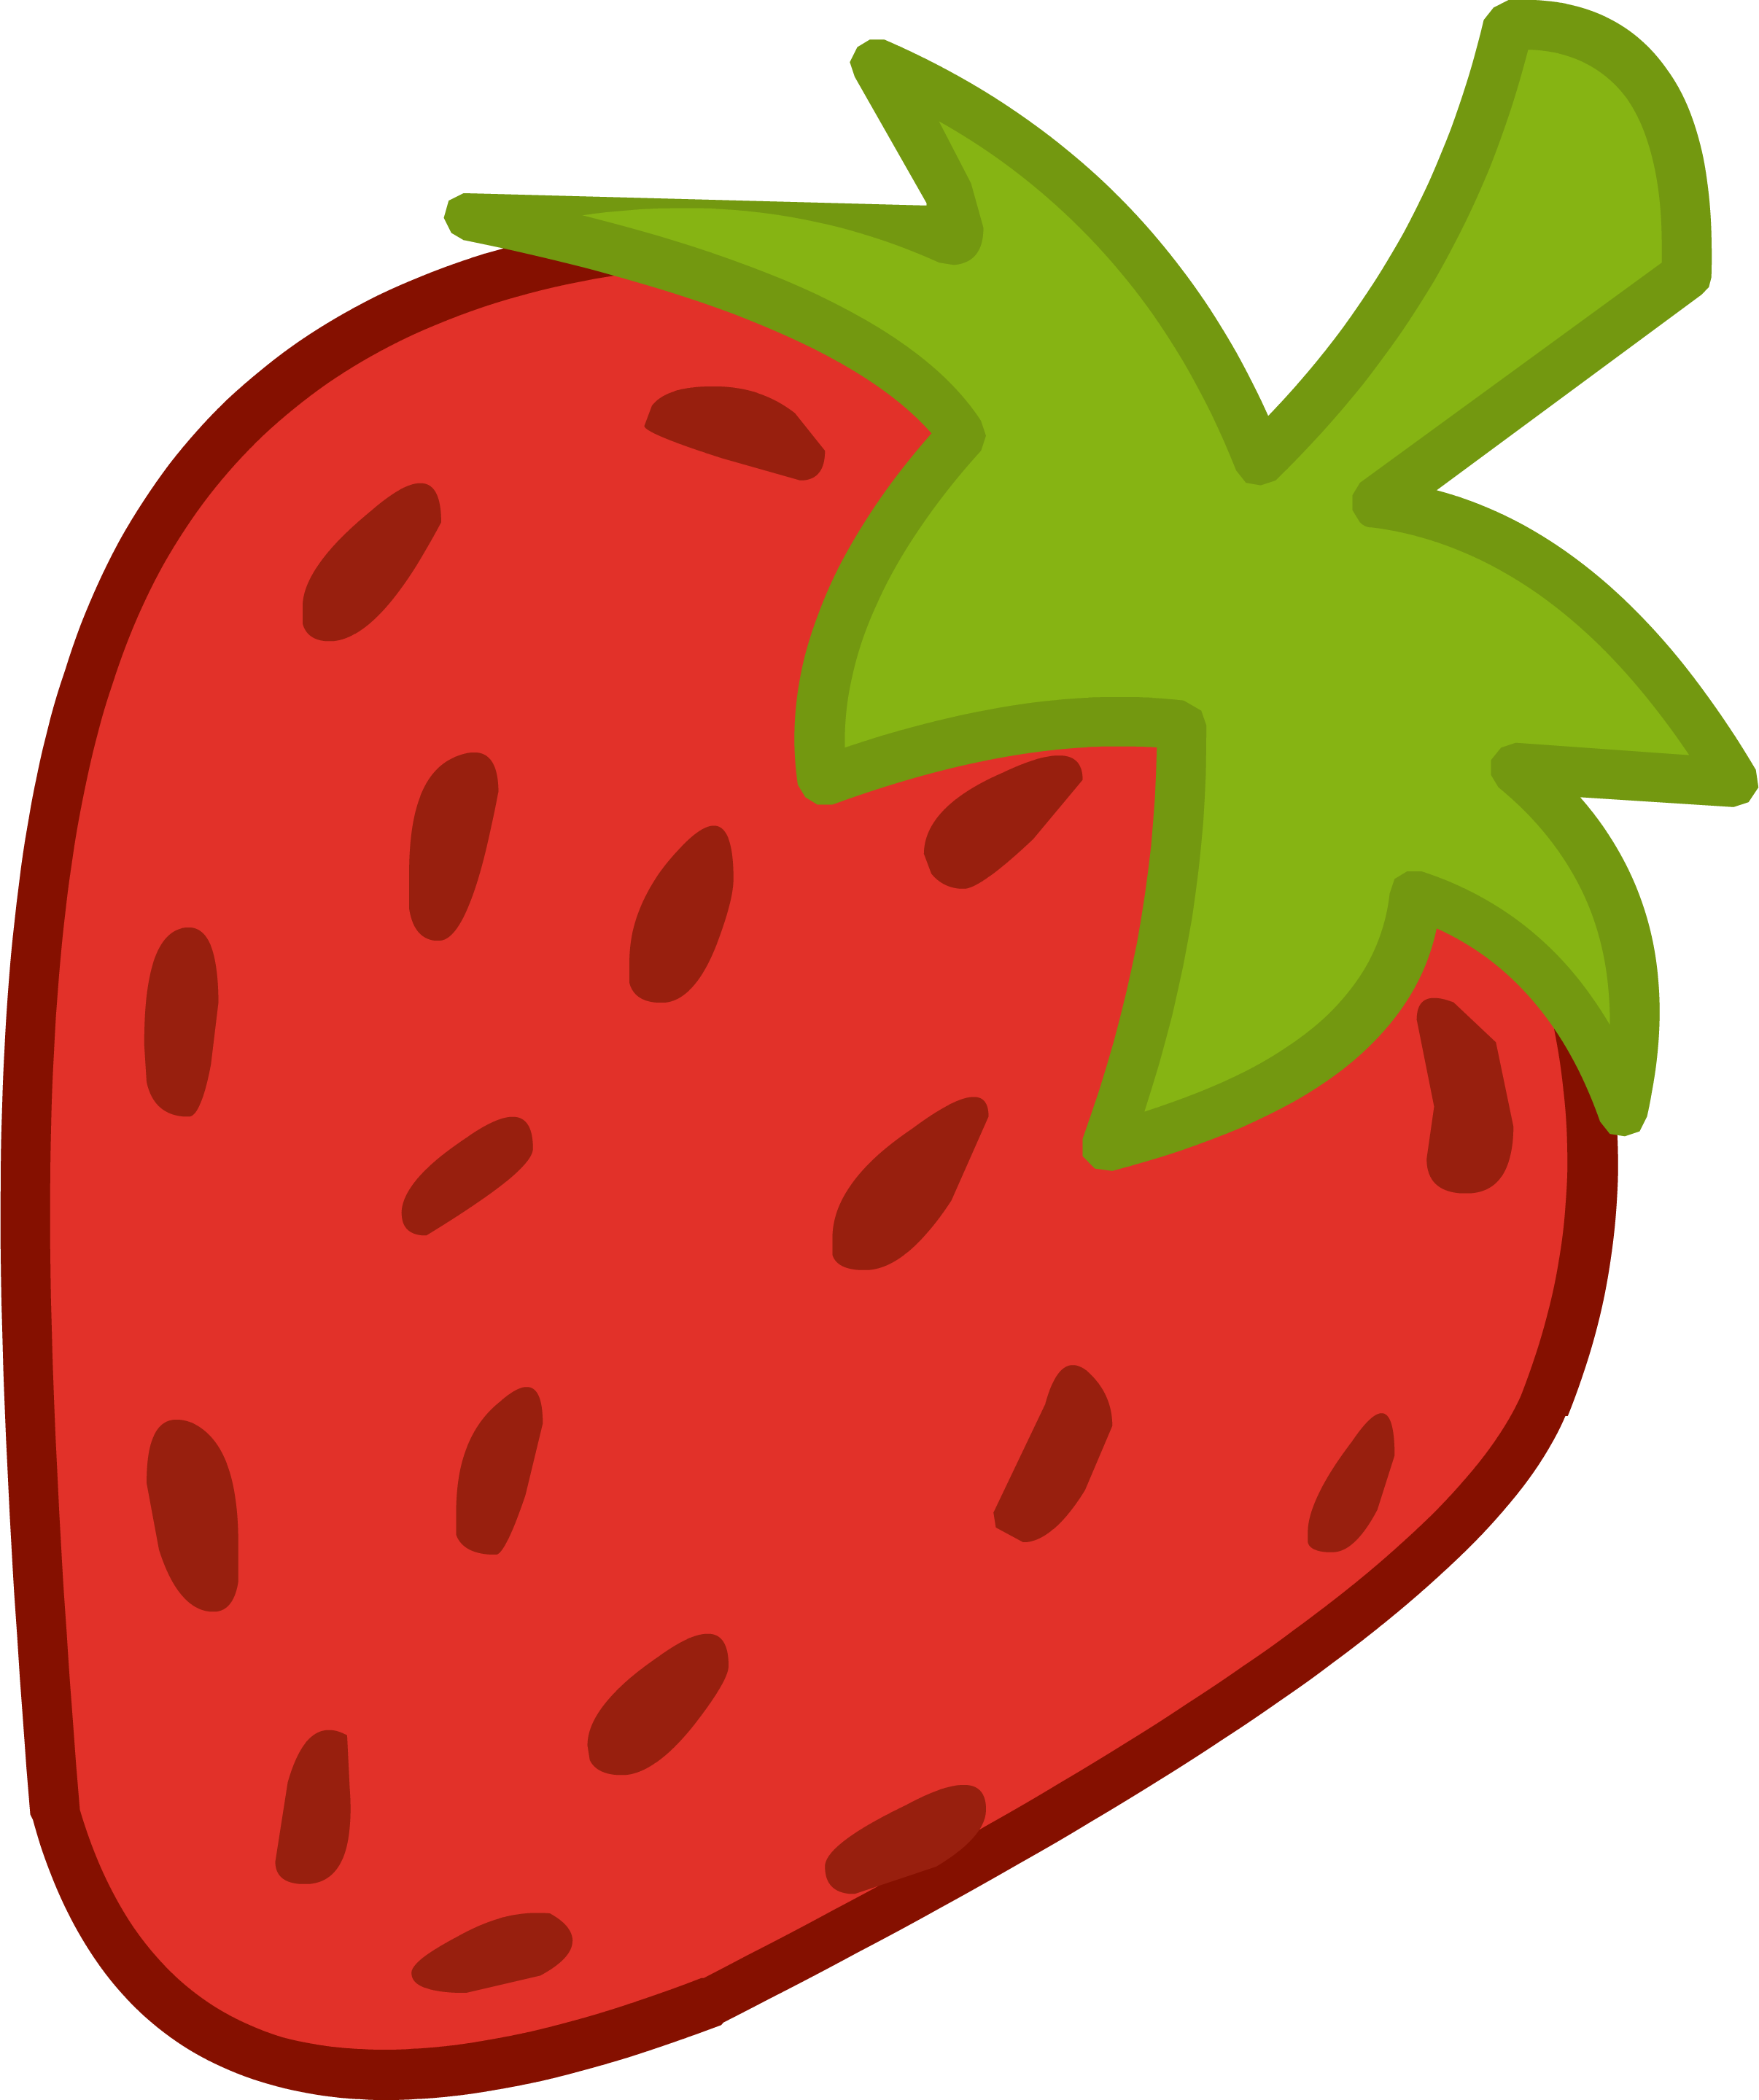 Strawberries Clip Art - Tumundografico